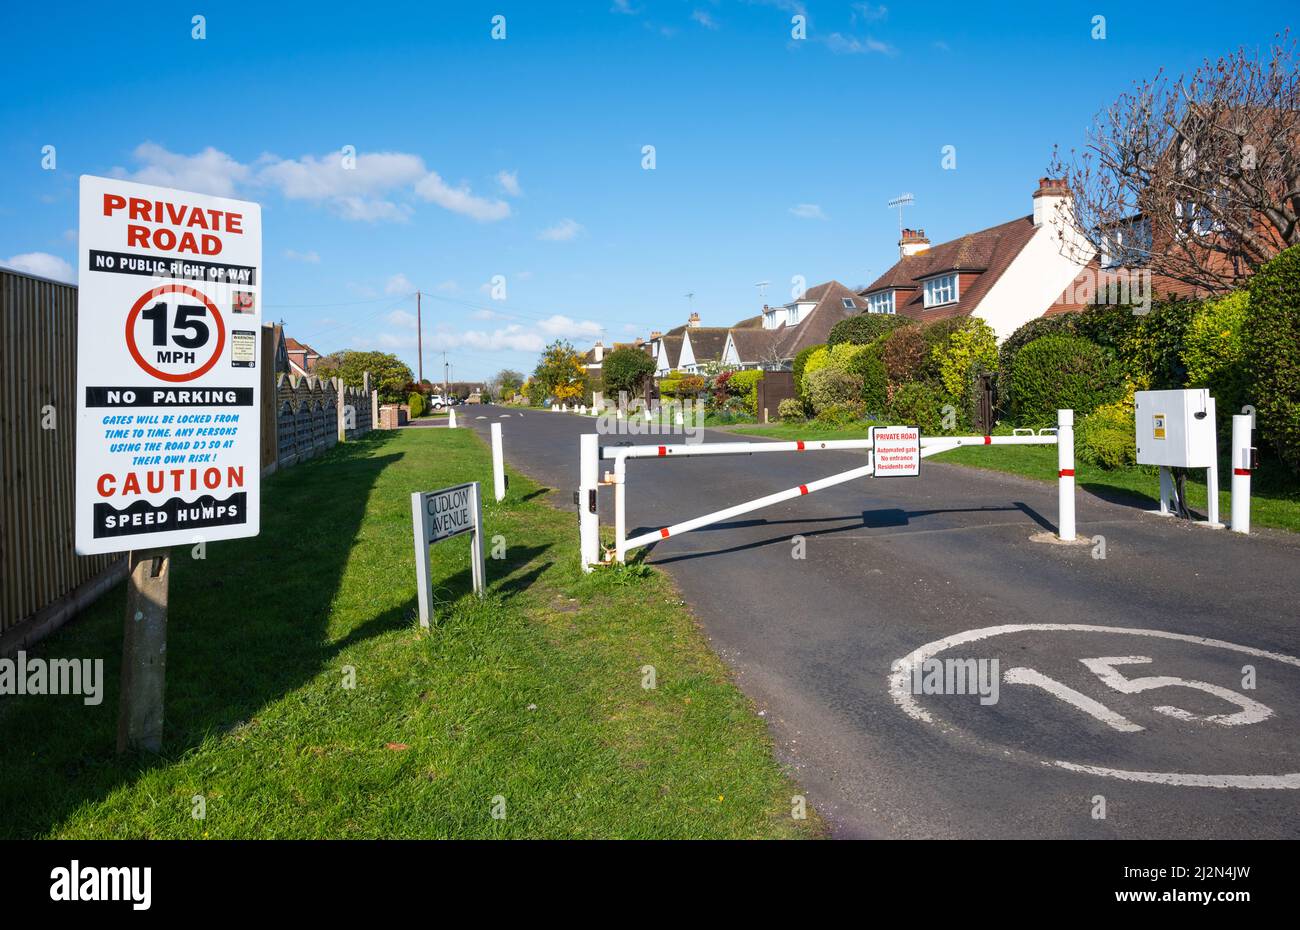 Ingresso con cancello chiuso per una strada privata con limite di velocità 15MPH a Cudlow Avenue, Rustington, West Sussex, Inghilterra, Regno Unito. Foto Stock